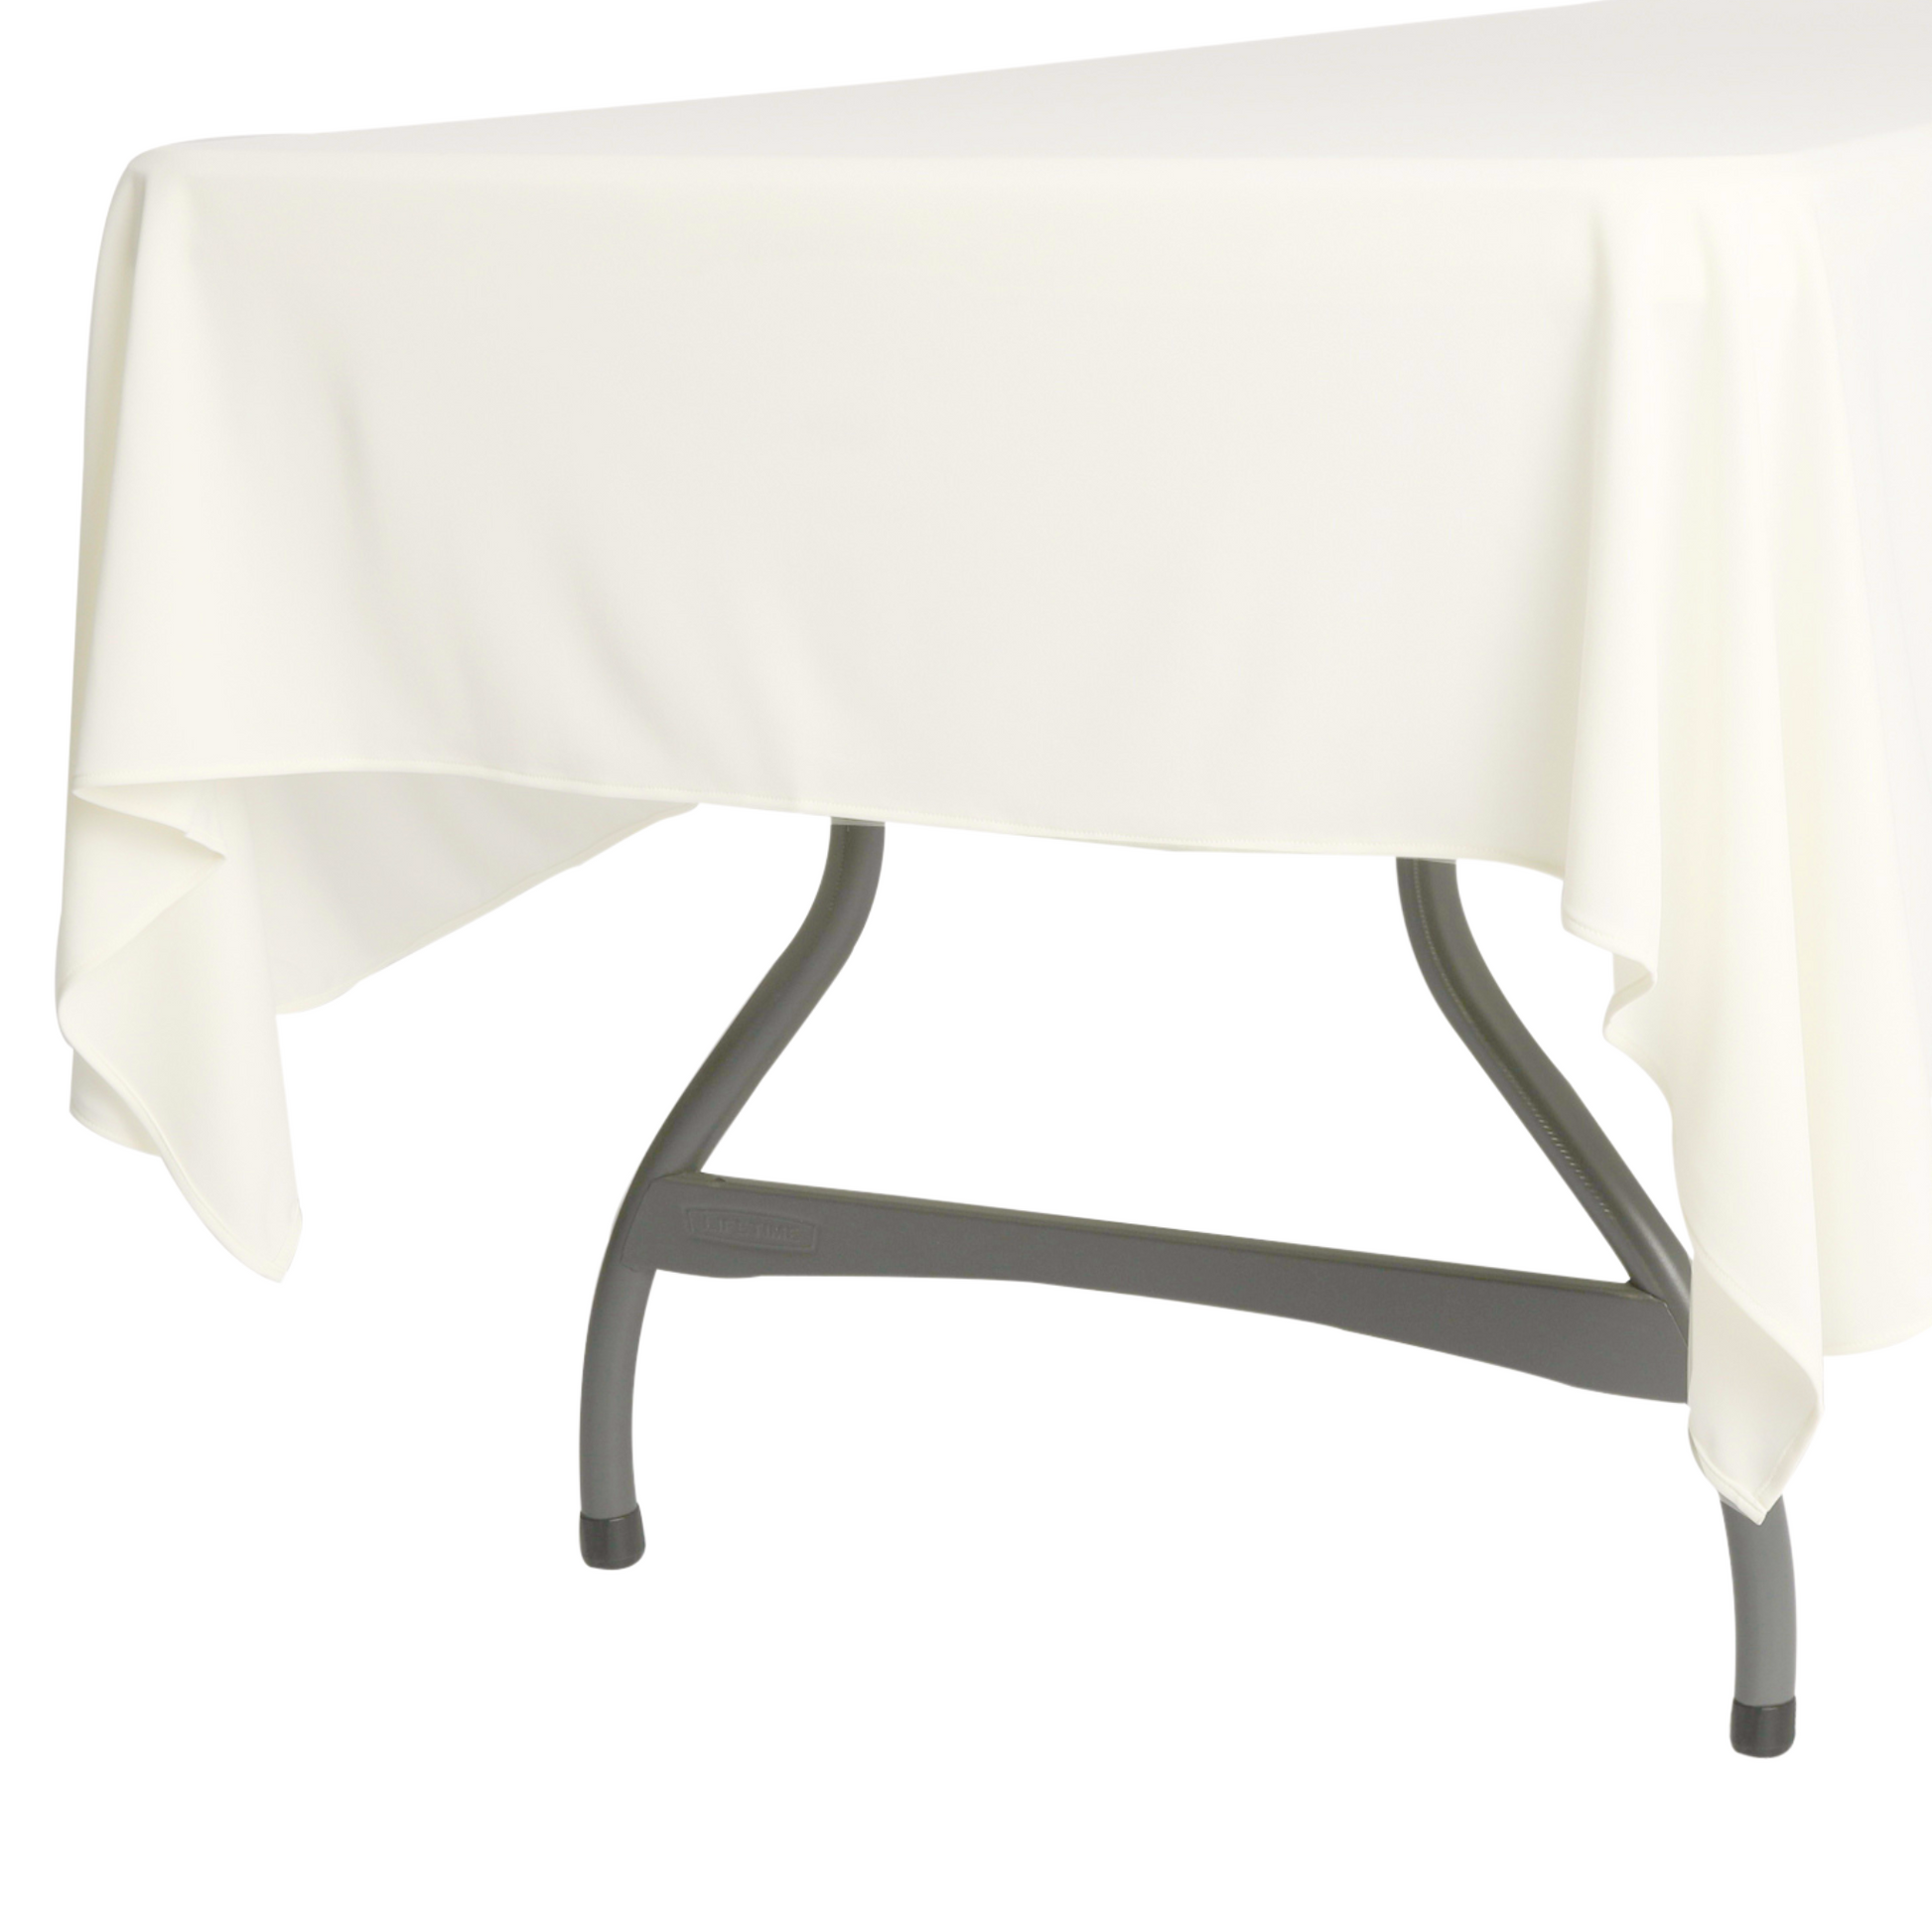 Scuba 60"x120" Rectangular Tablecloth - Ivory